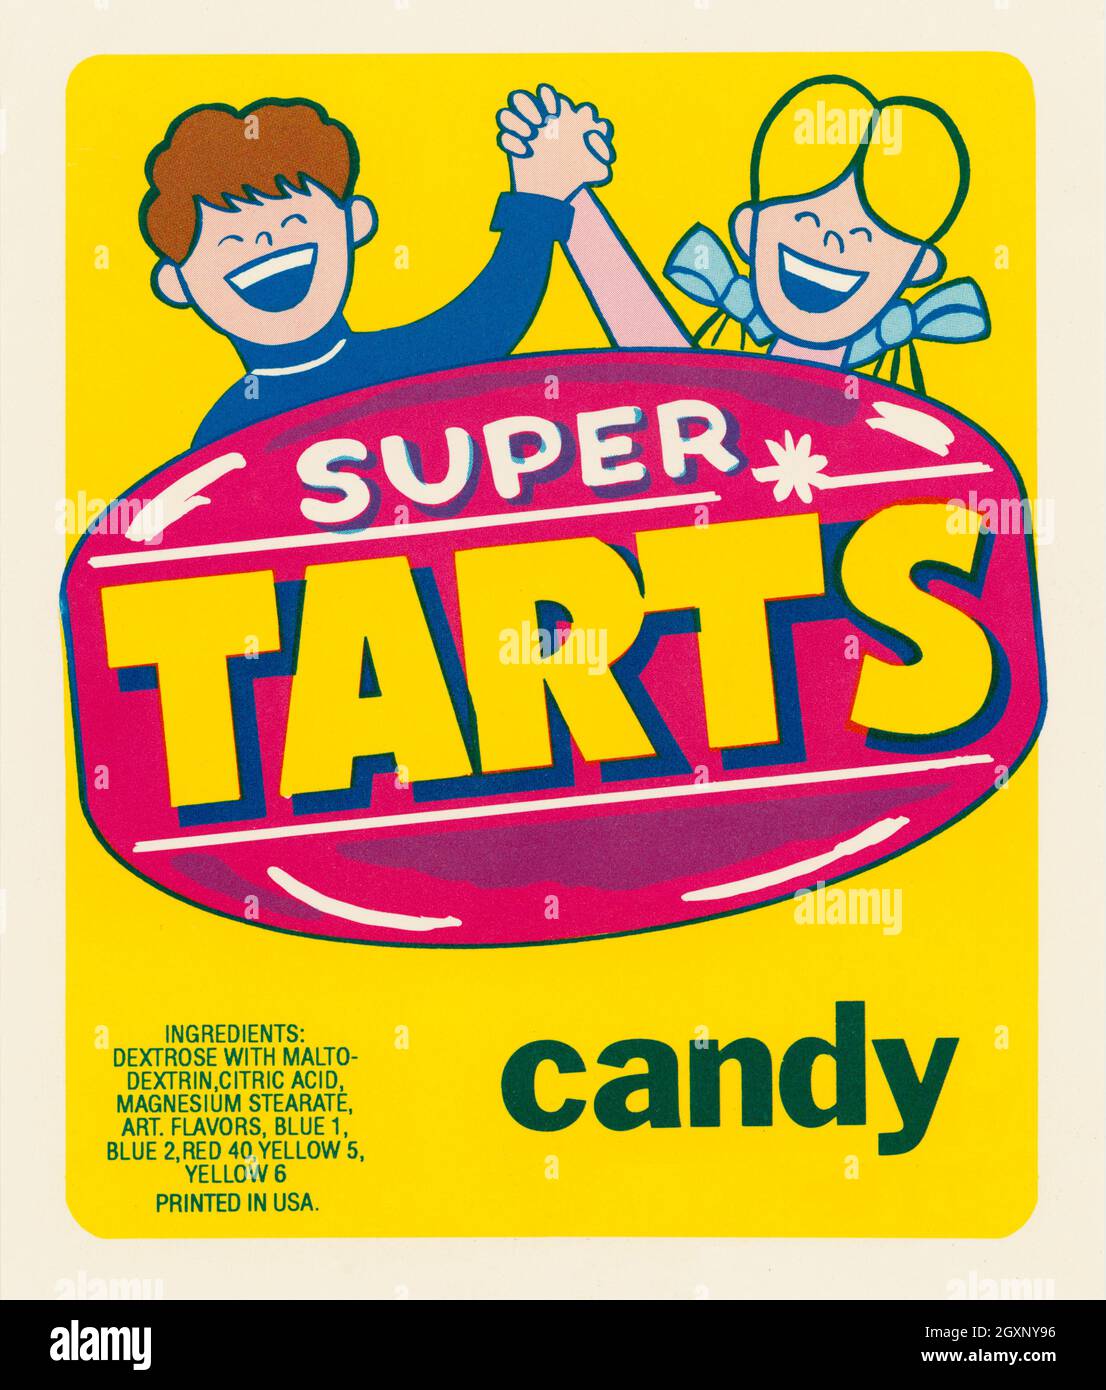 Super Tarts Candy Foto de stock